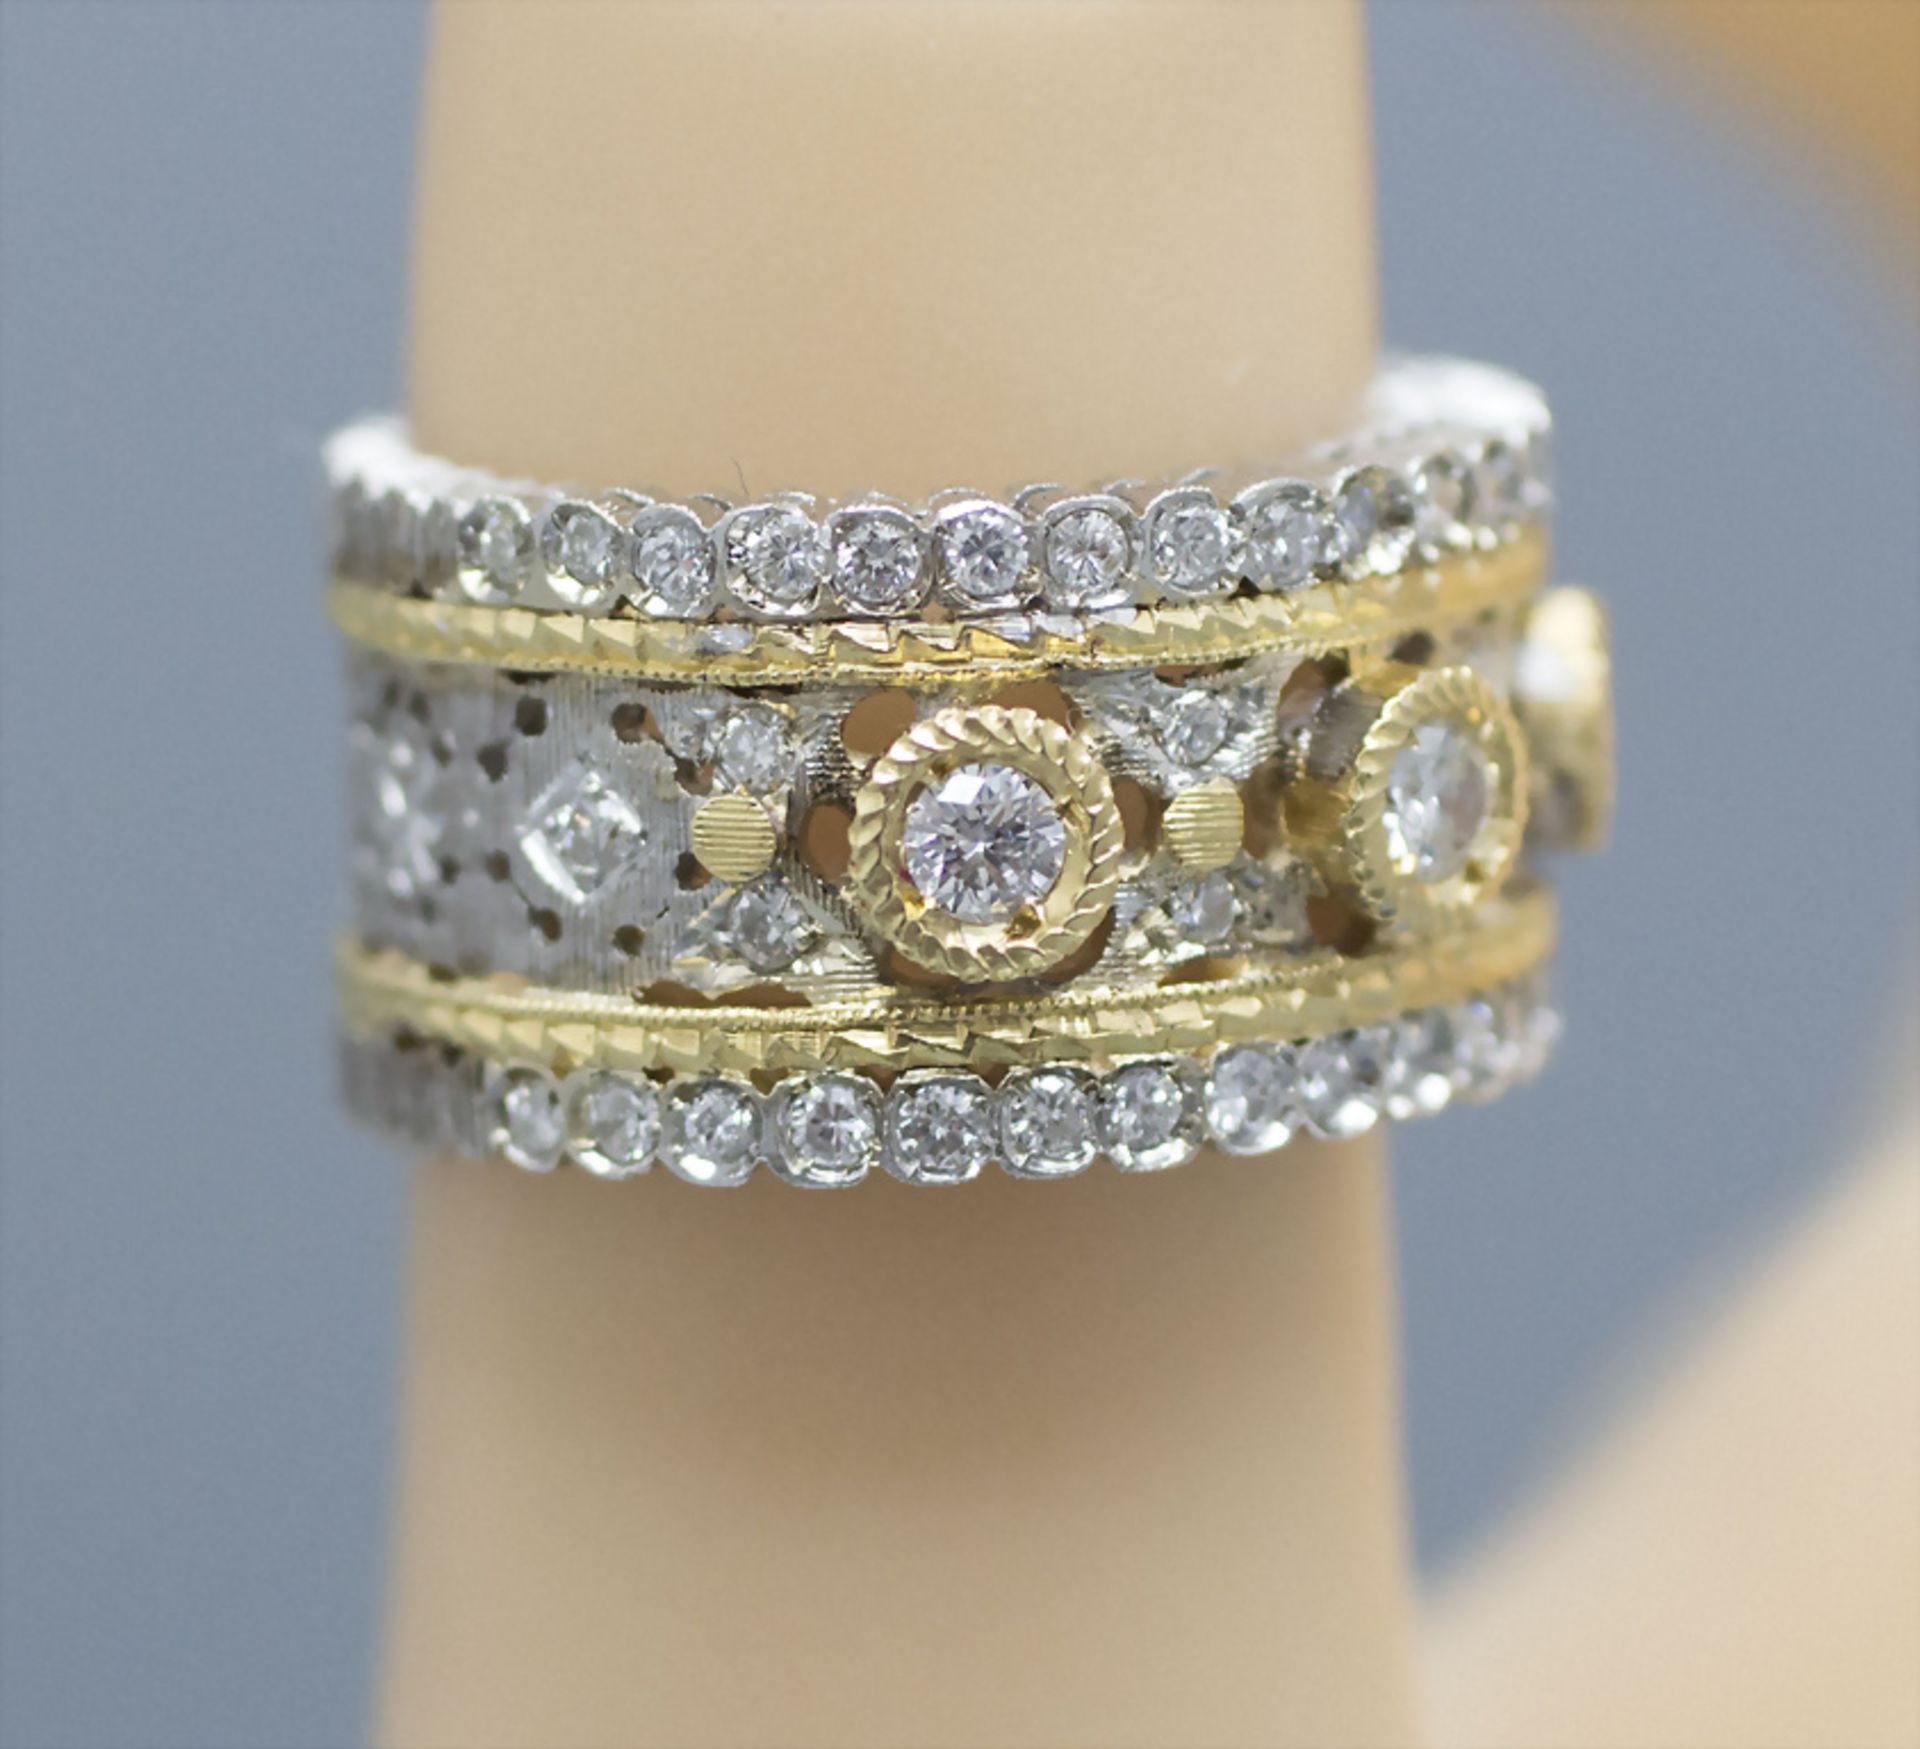 Damenring mit Brillanten / An 18 ct ladies gold ring with diamonds - Image 2 of 3